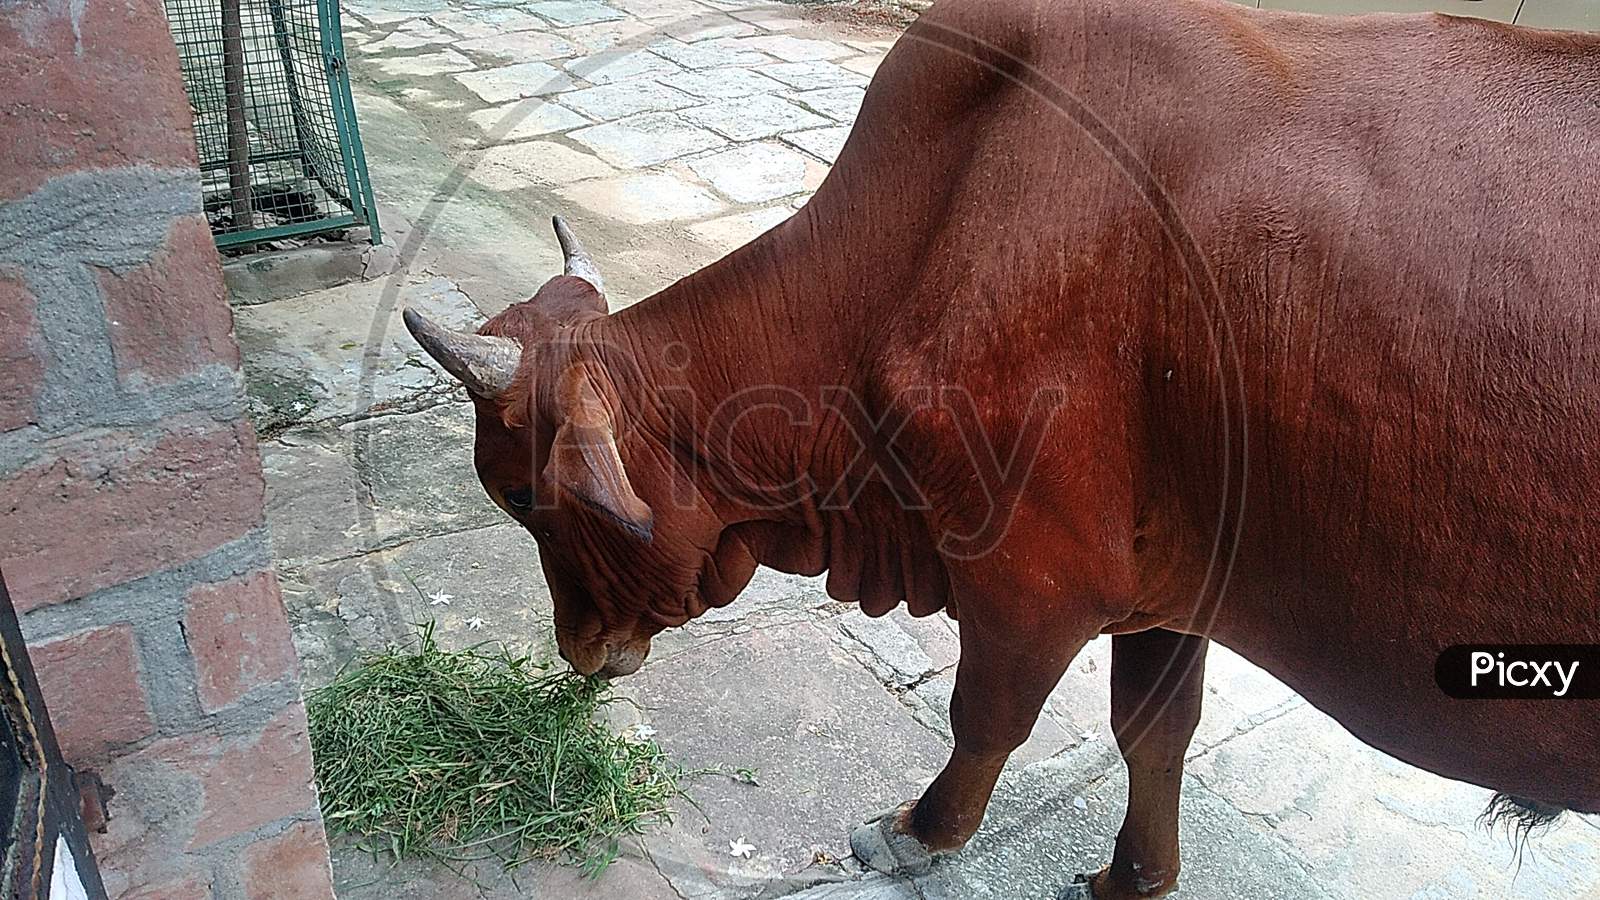 Bull eating the grass